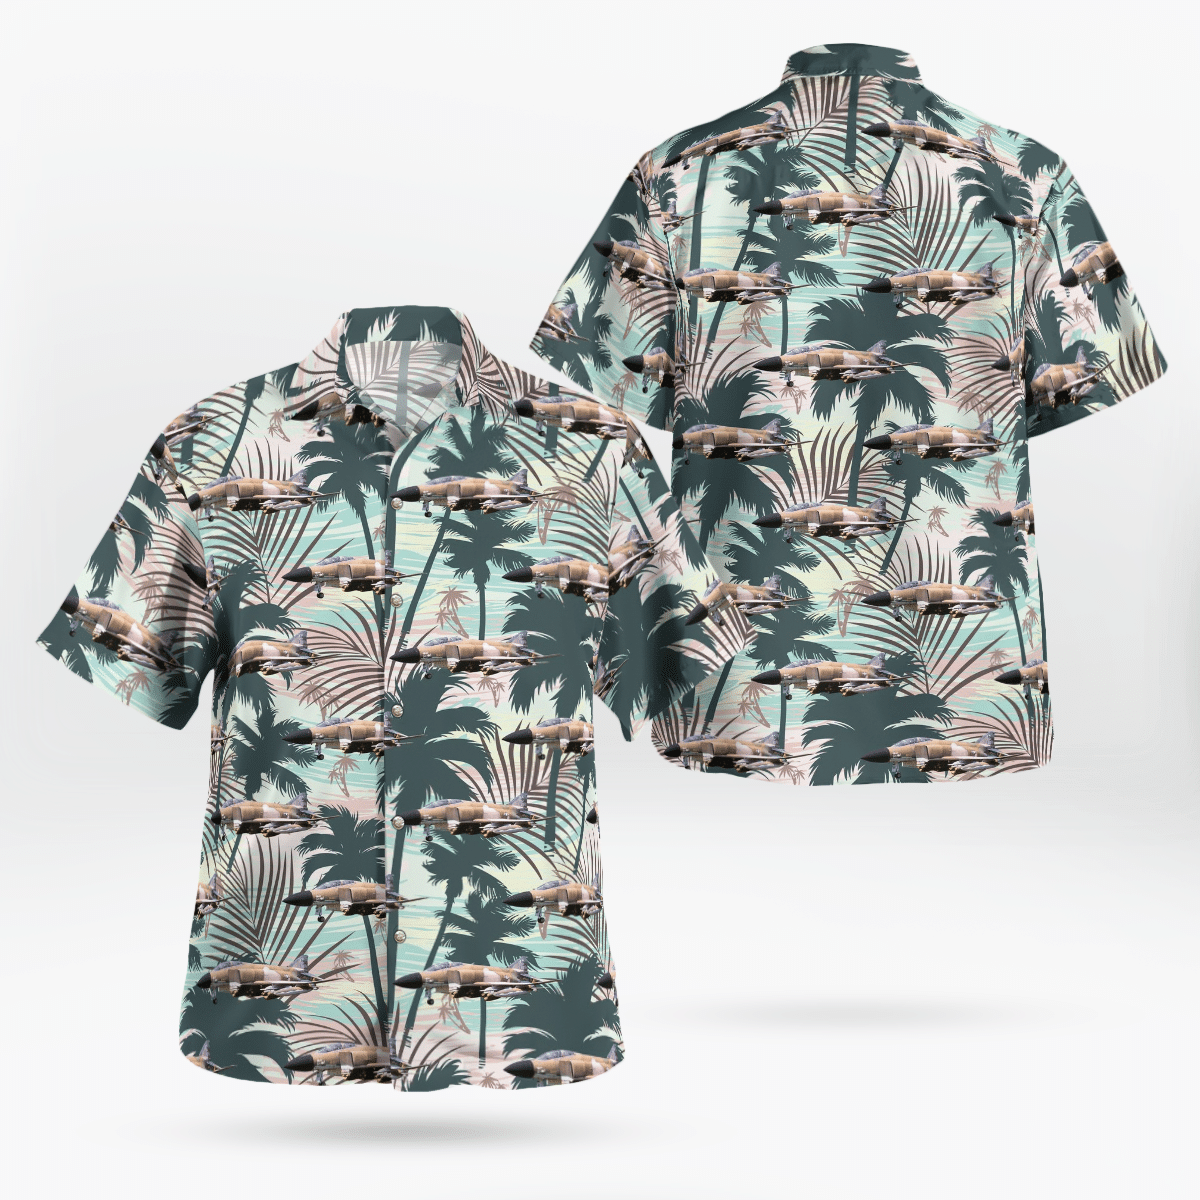 Best Hawaiian shirts 2022 155